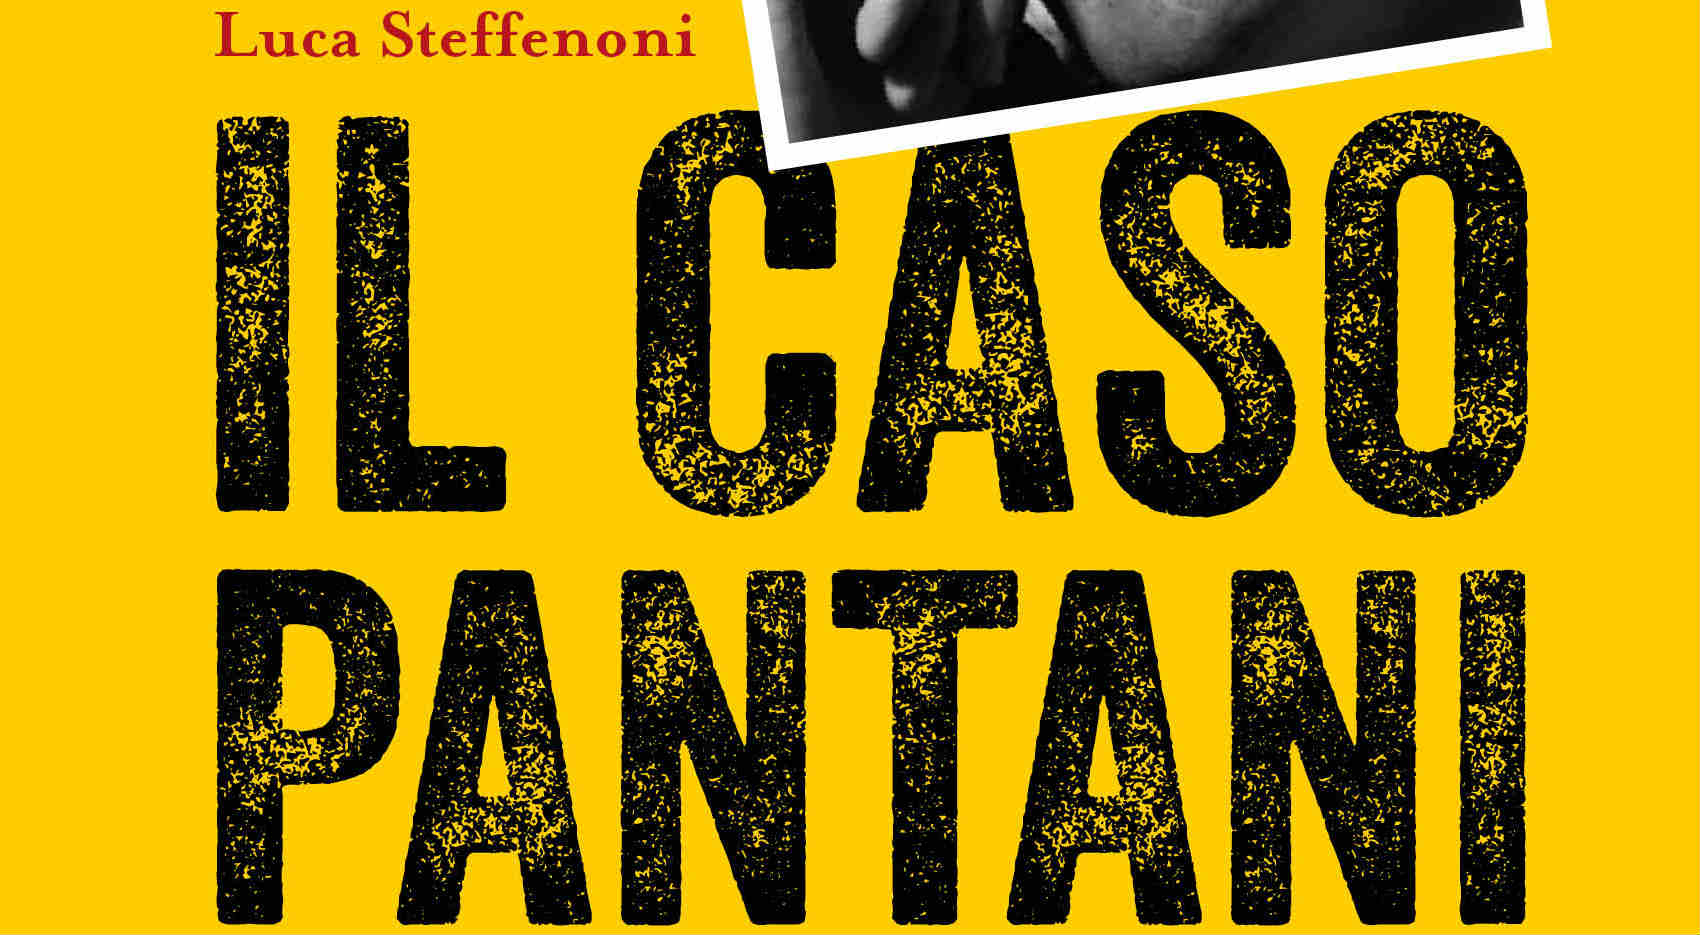 Pantani e i misteri italiani: la nuova collana di Chiarelettere